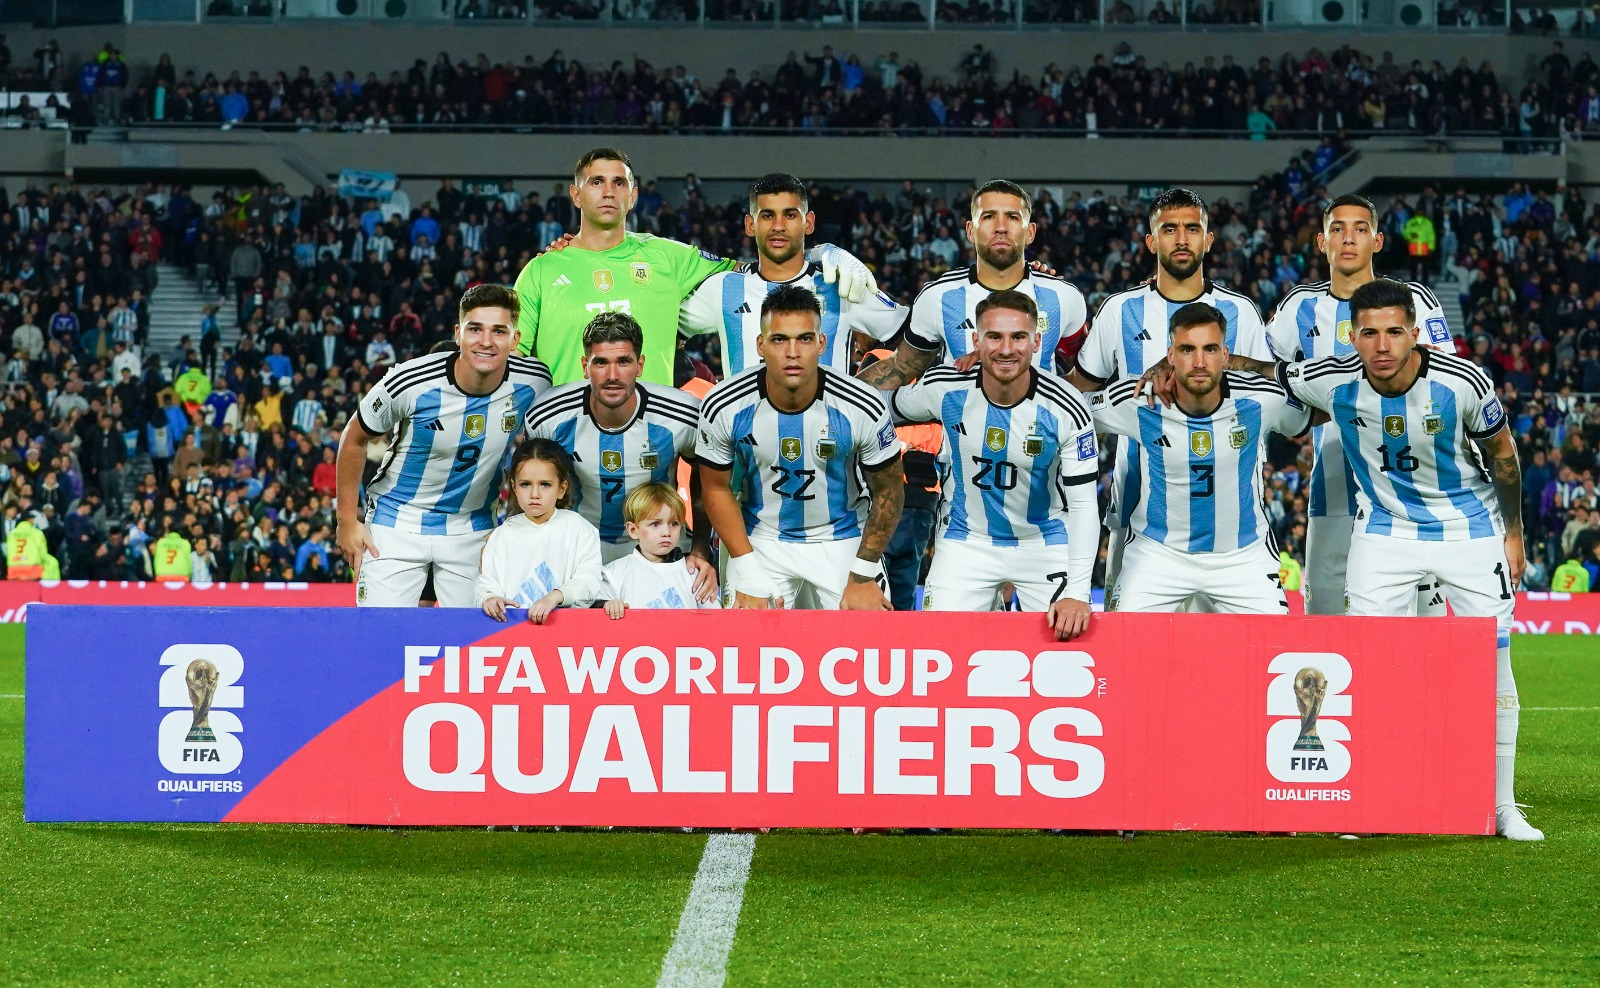 Imparável! Argentina venceu todos os jogos desde que foi campeã da